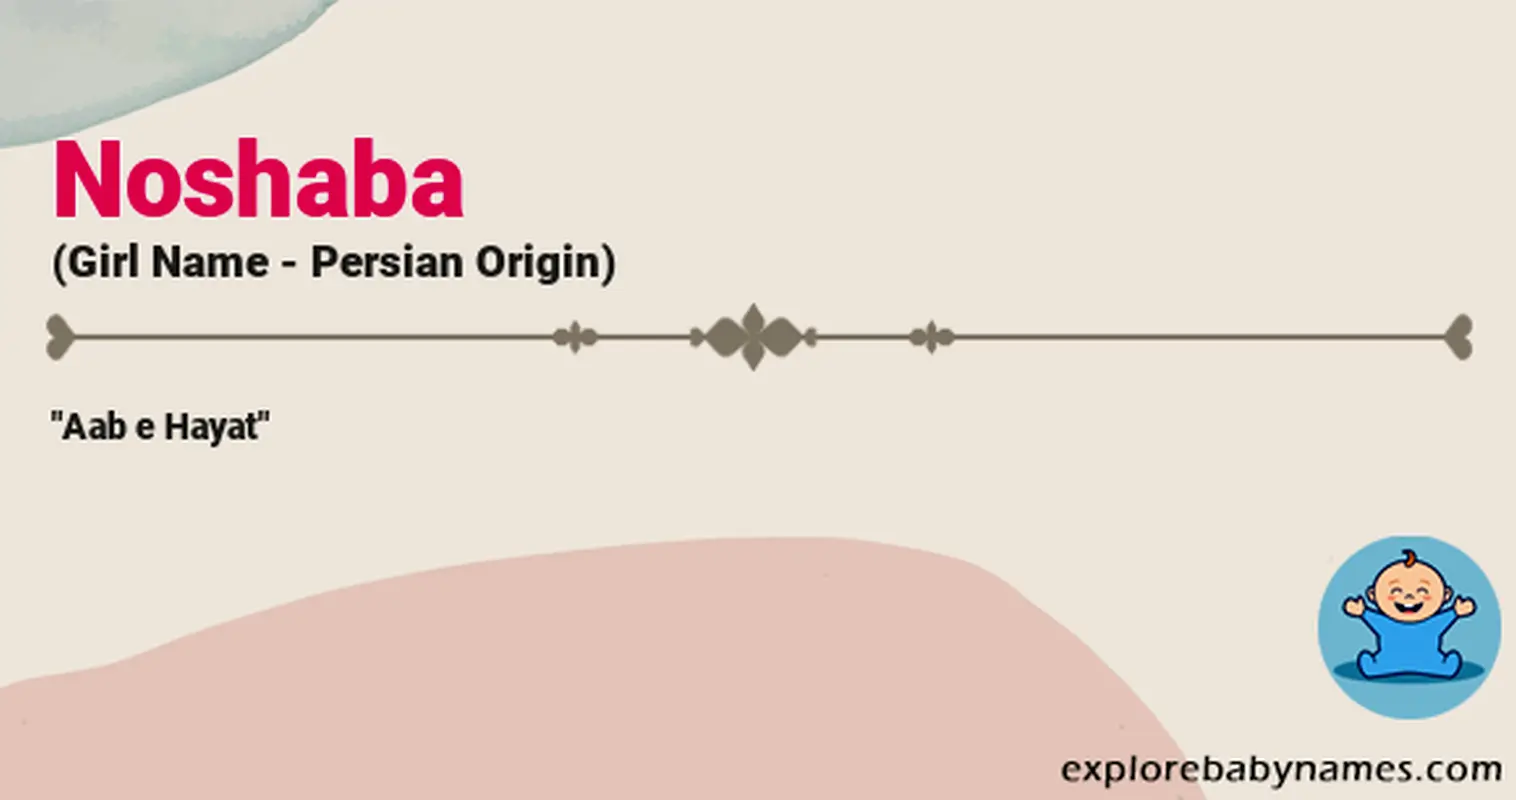 Meaning of Noshaba